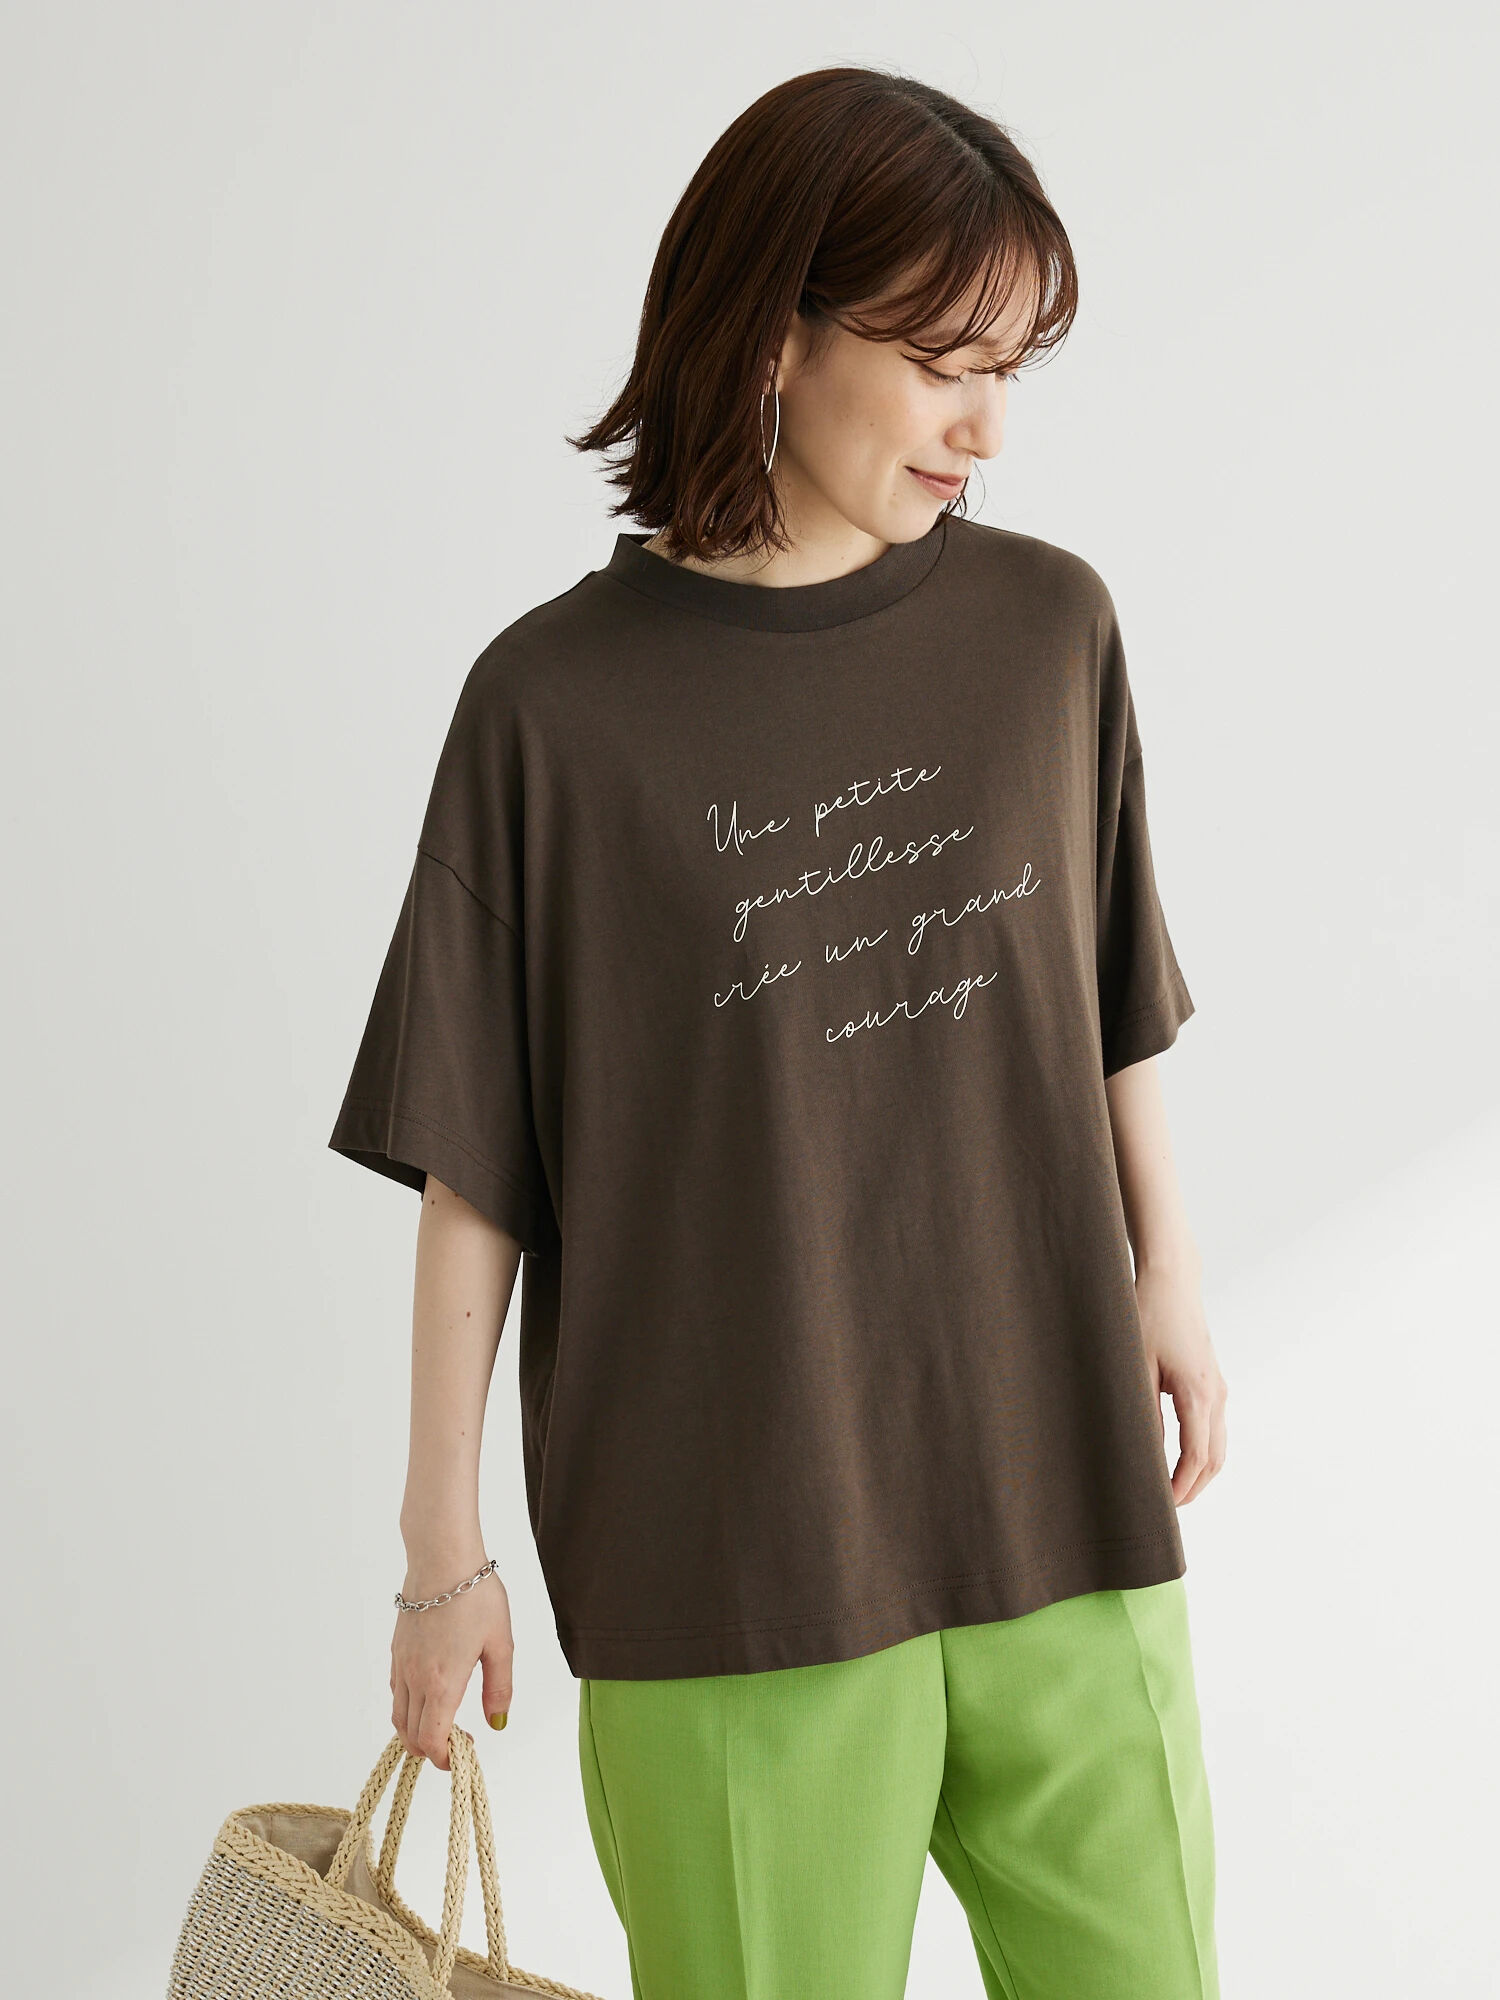 多段筆記体オーバーサイズボックスTシャツ / Green Parks(グリーンパークス)のTシャツ ファッション通販のSTRIPE CLUB